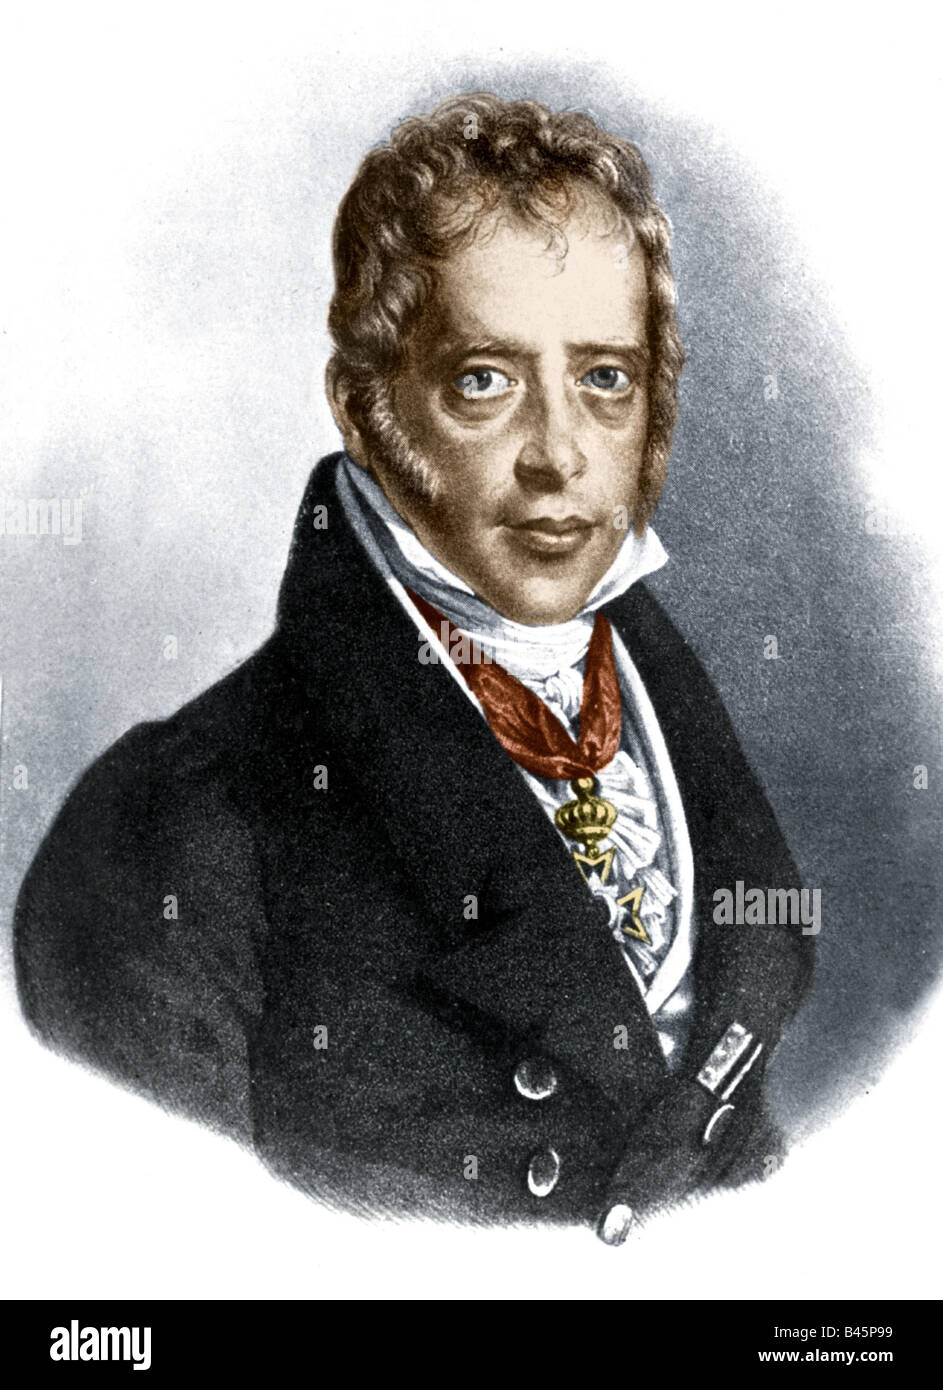 Rothschild, Salomon Mayer baron von, 9.9.1774 - 28.7.1855, German banker,  portrait, lithograph, engraving by Lieder, 19th century Stock Photo - Alamy